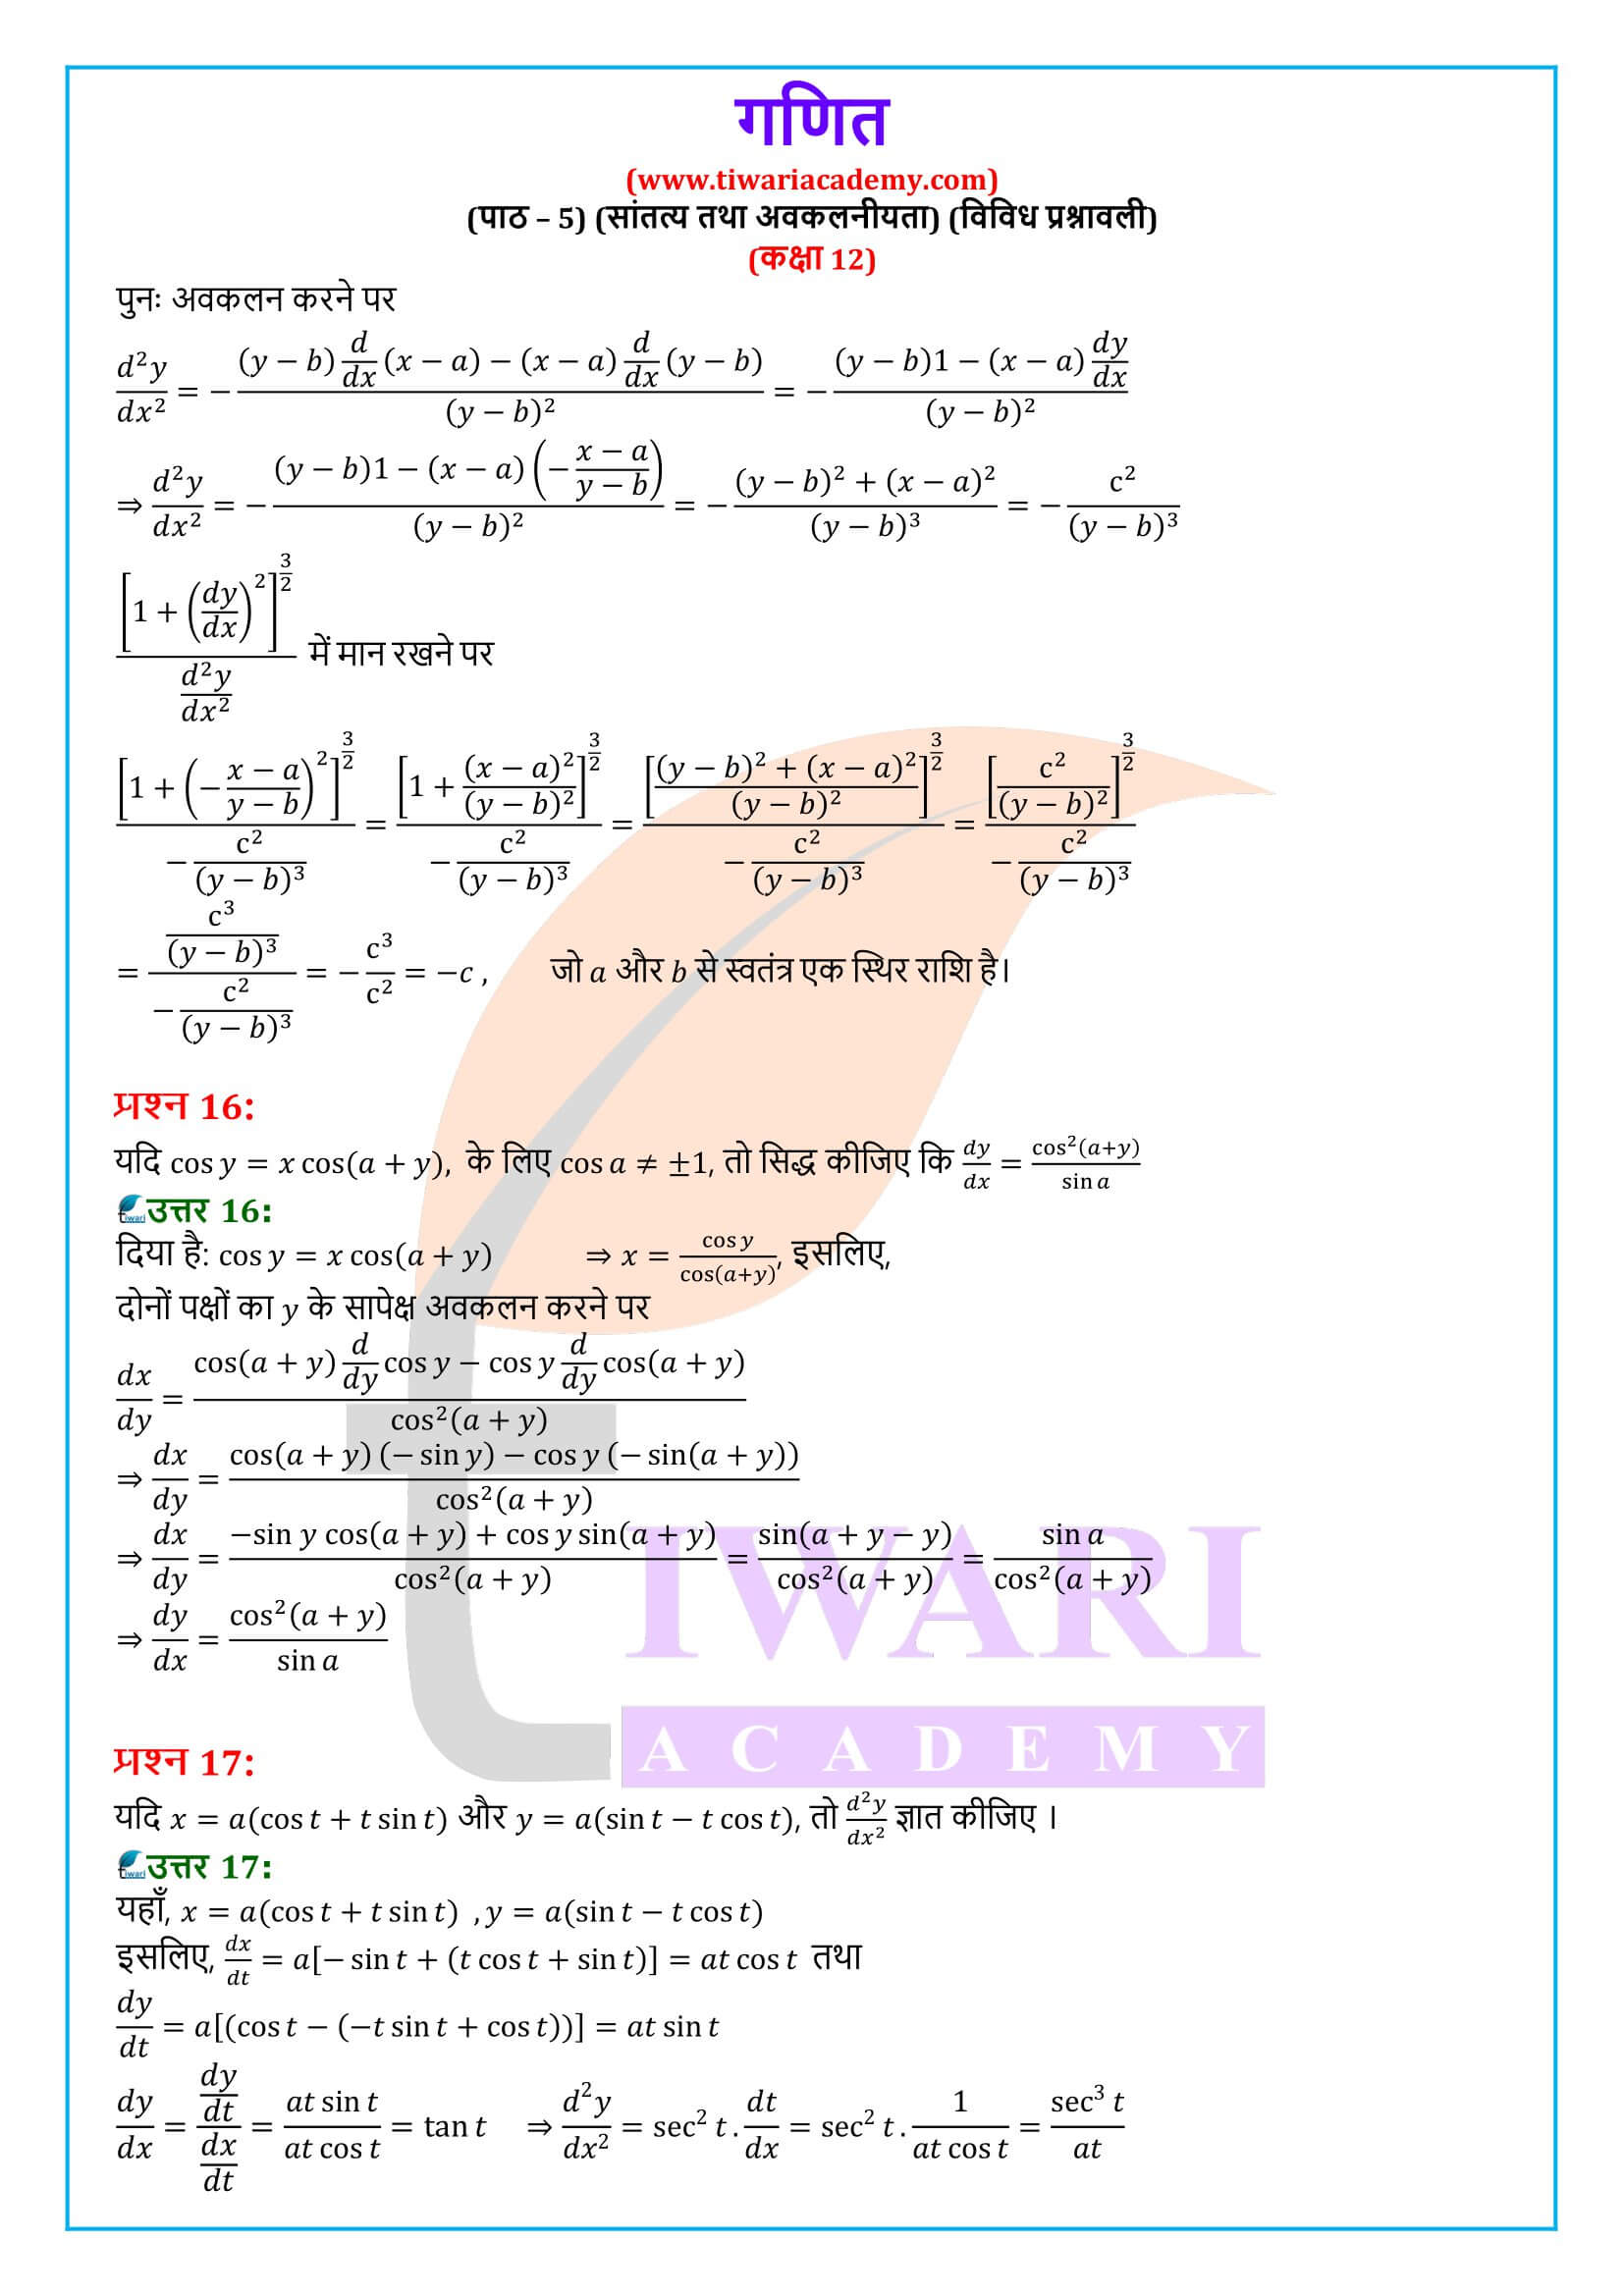 कक्षा 12 गणित अध्याय 5 विविध प्रश्नावली के हल हिंदी में